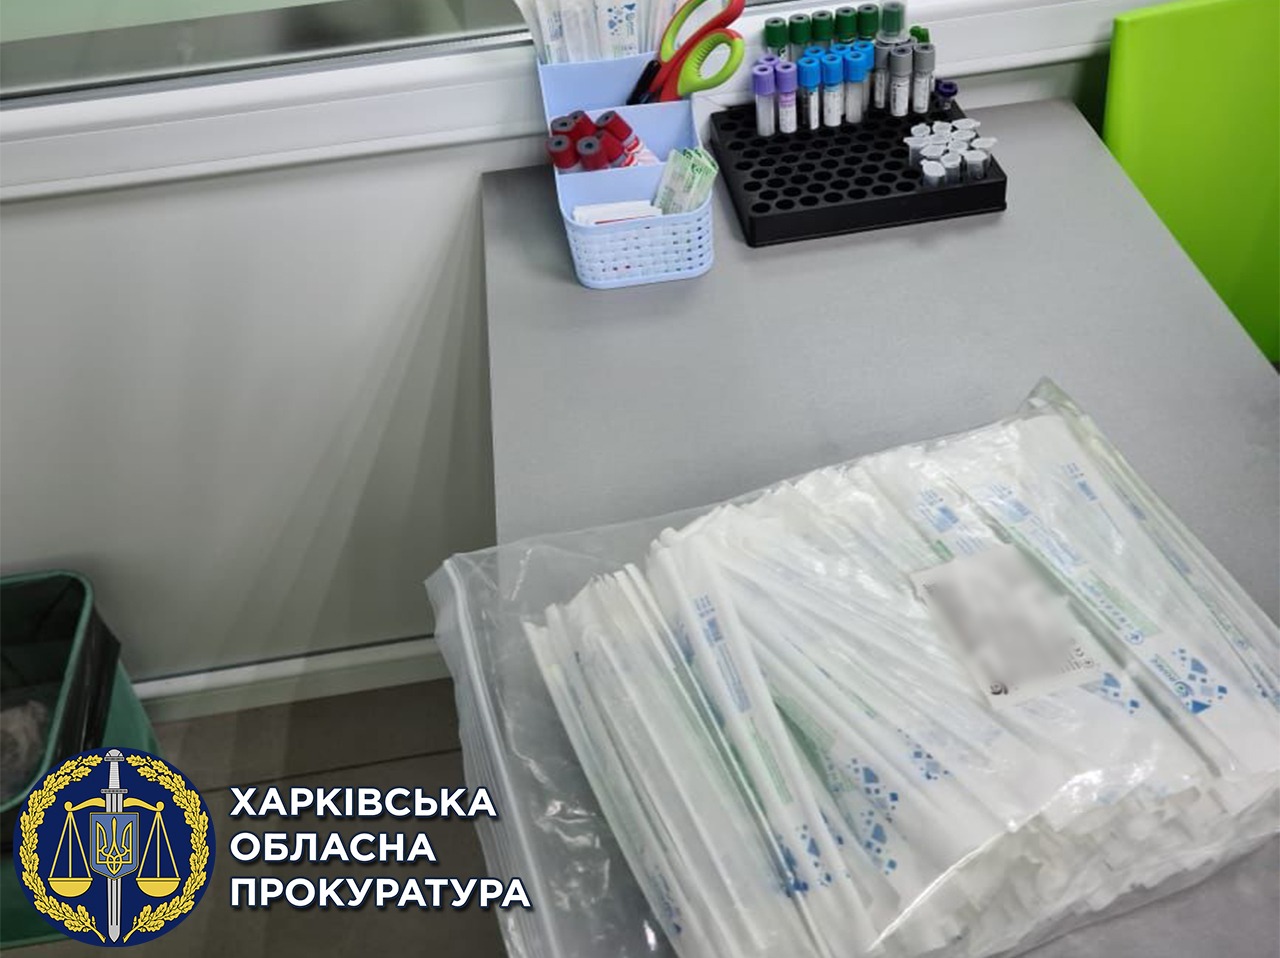 Сговорились с турагентствами: в Харькове подделывали ПЦР-тесты для путешественников